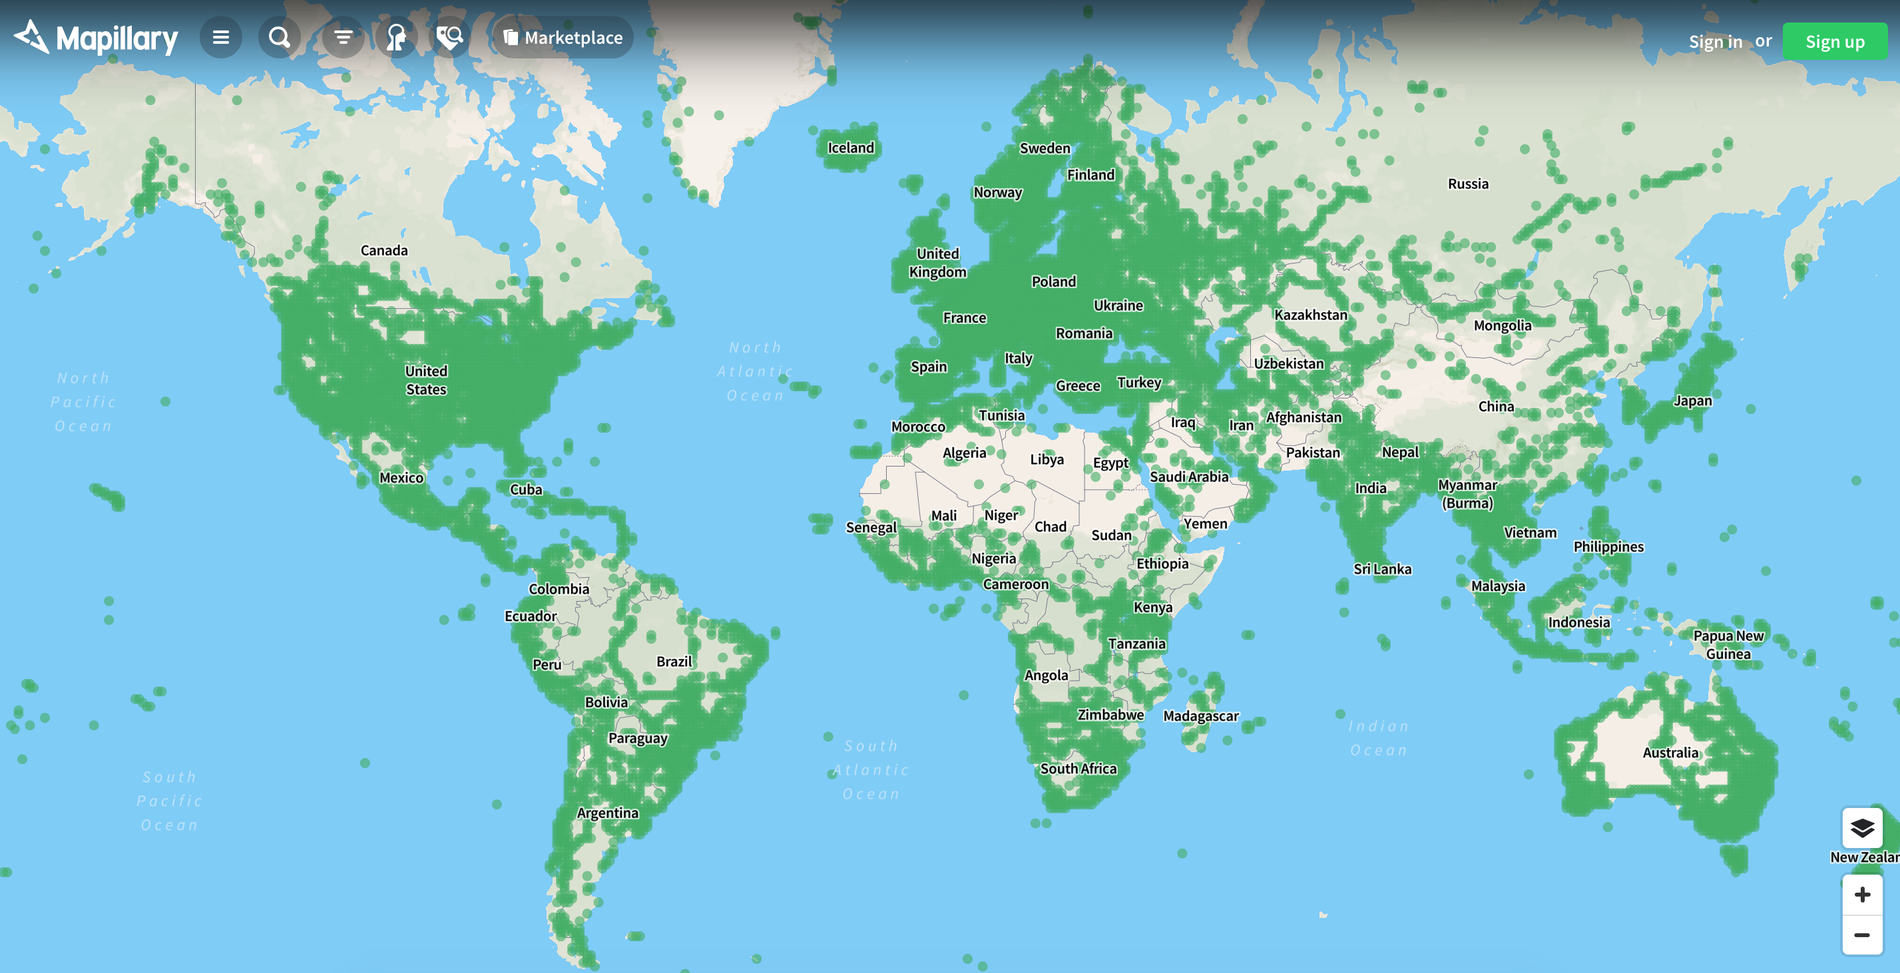 Översiktsbild på de områden som Mapillarys användare har hjälpt till att kartlägga hittills.